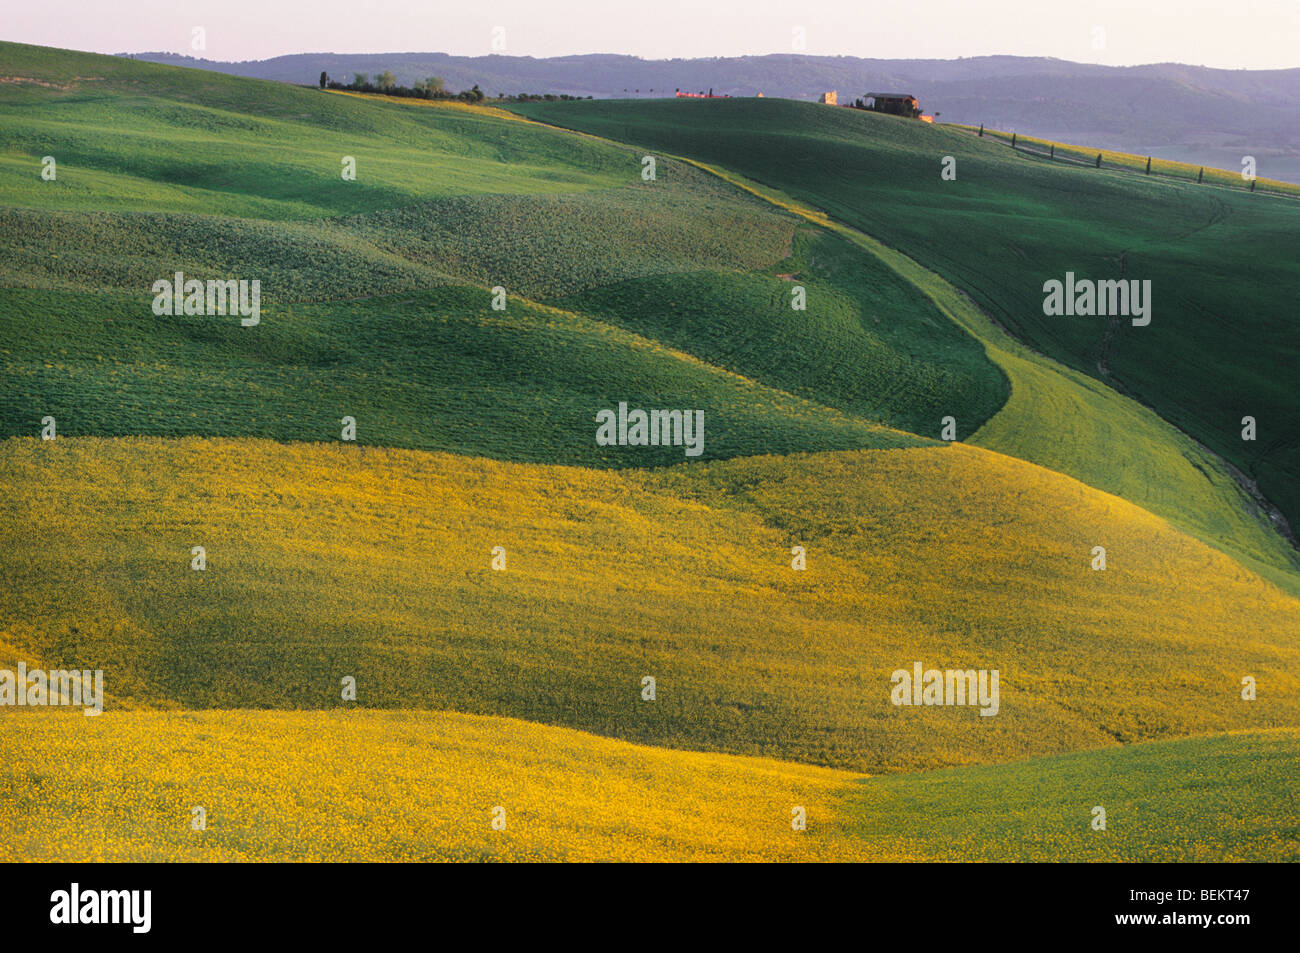 Slanted fields in Tuscany, Italy Stock Photo